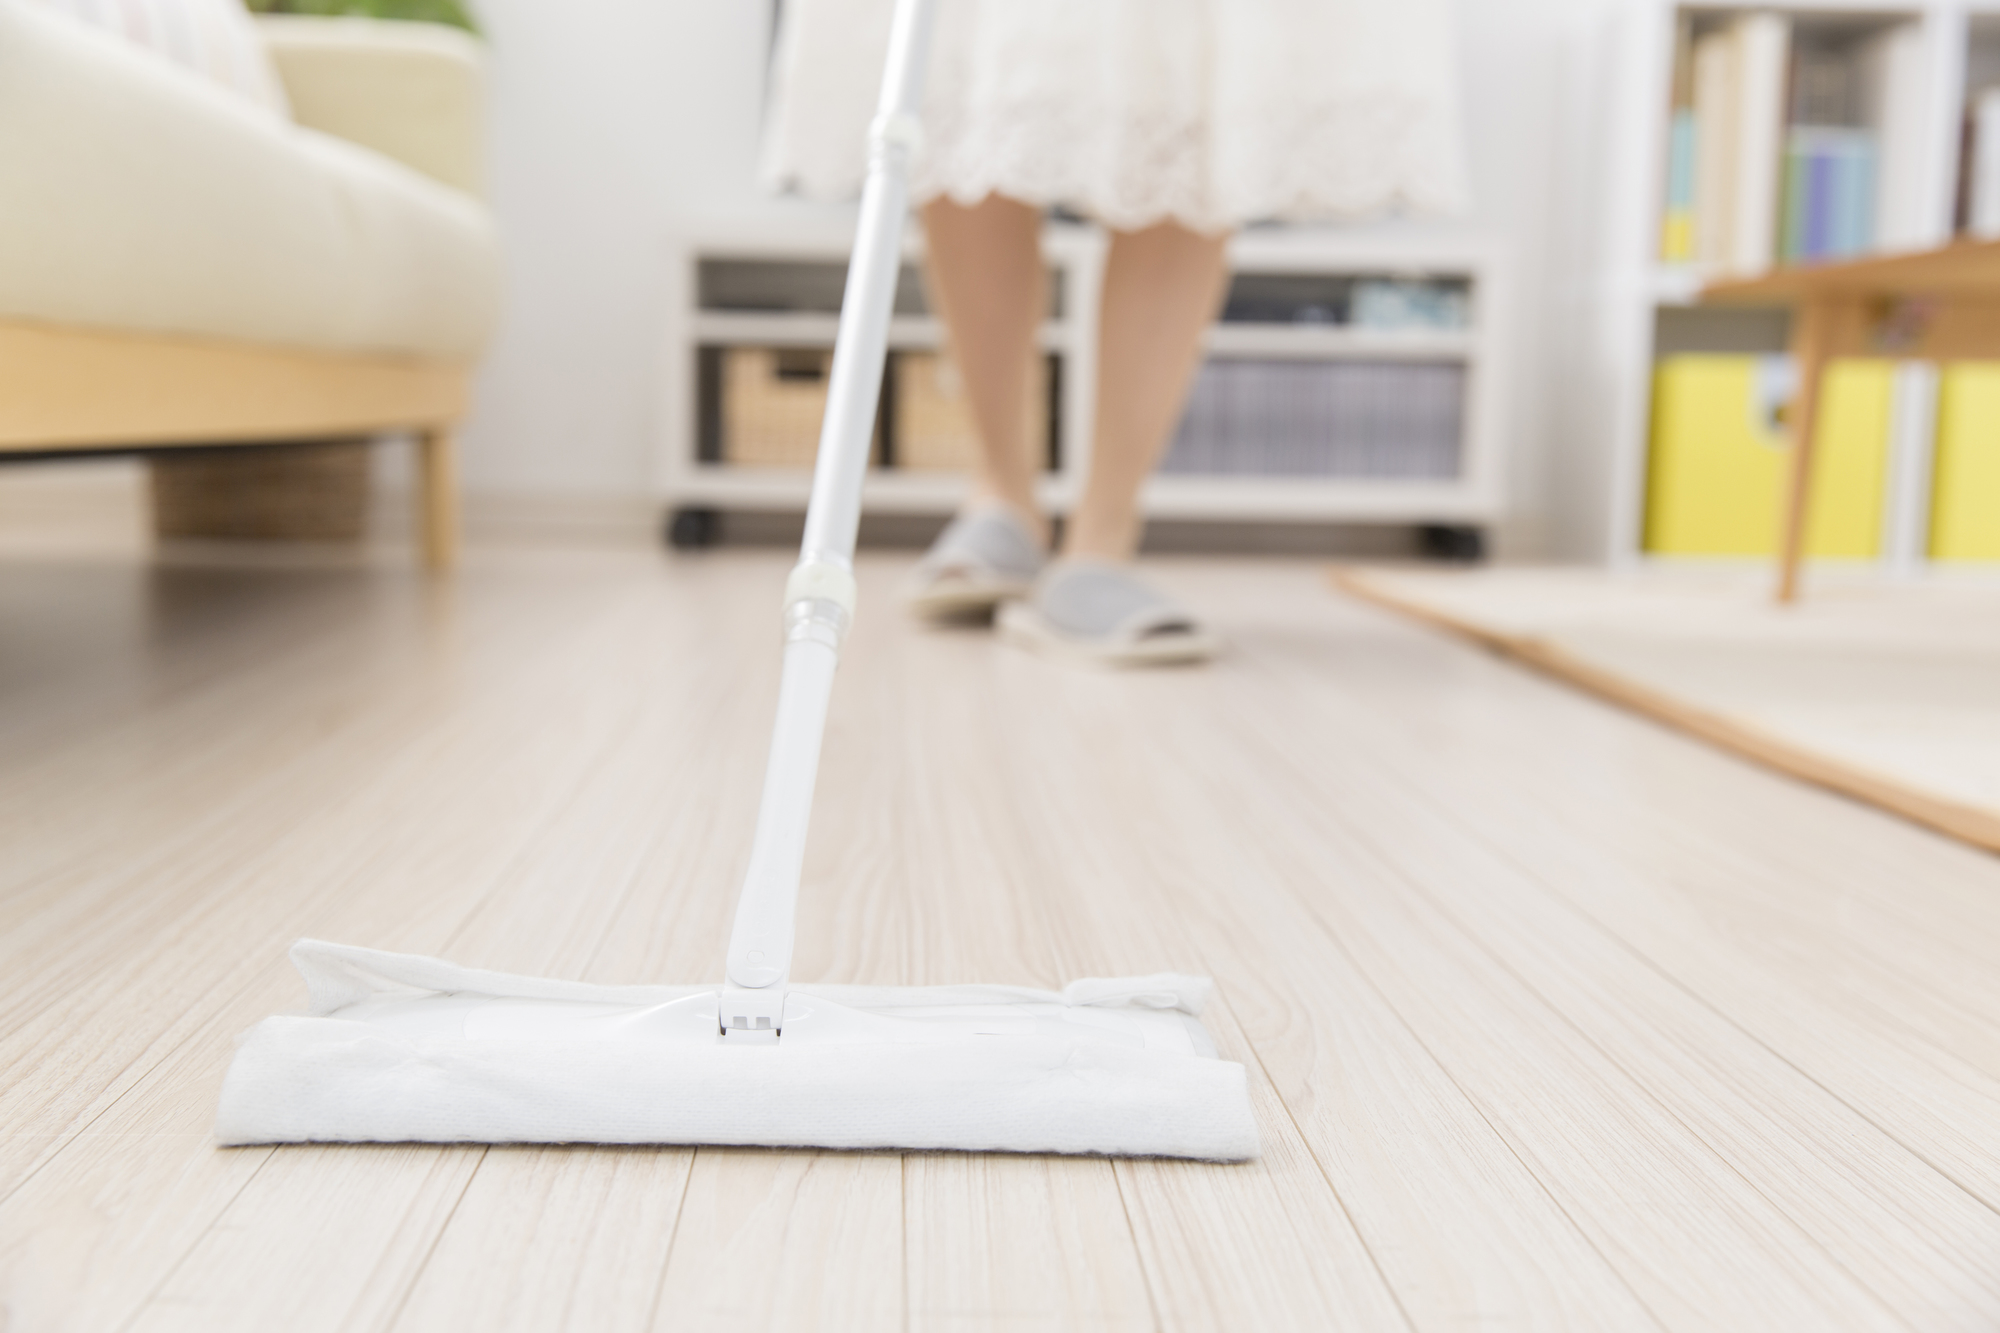 床掃除 掃除機が先 フローリングワイパーが先 正しい順番を解説 Haier Japan Region